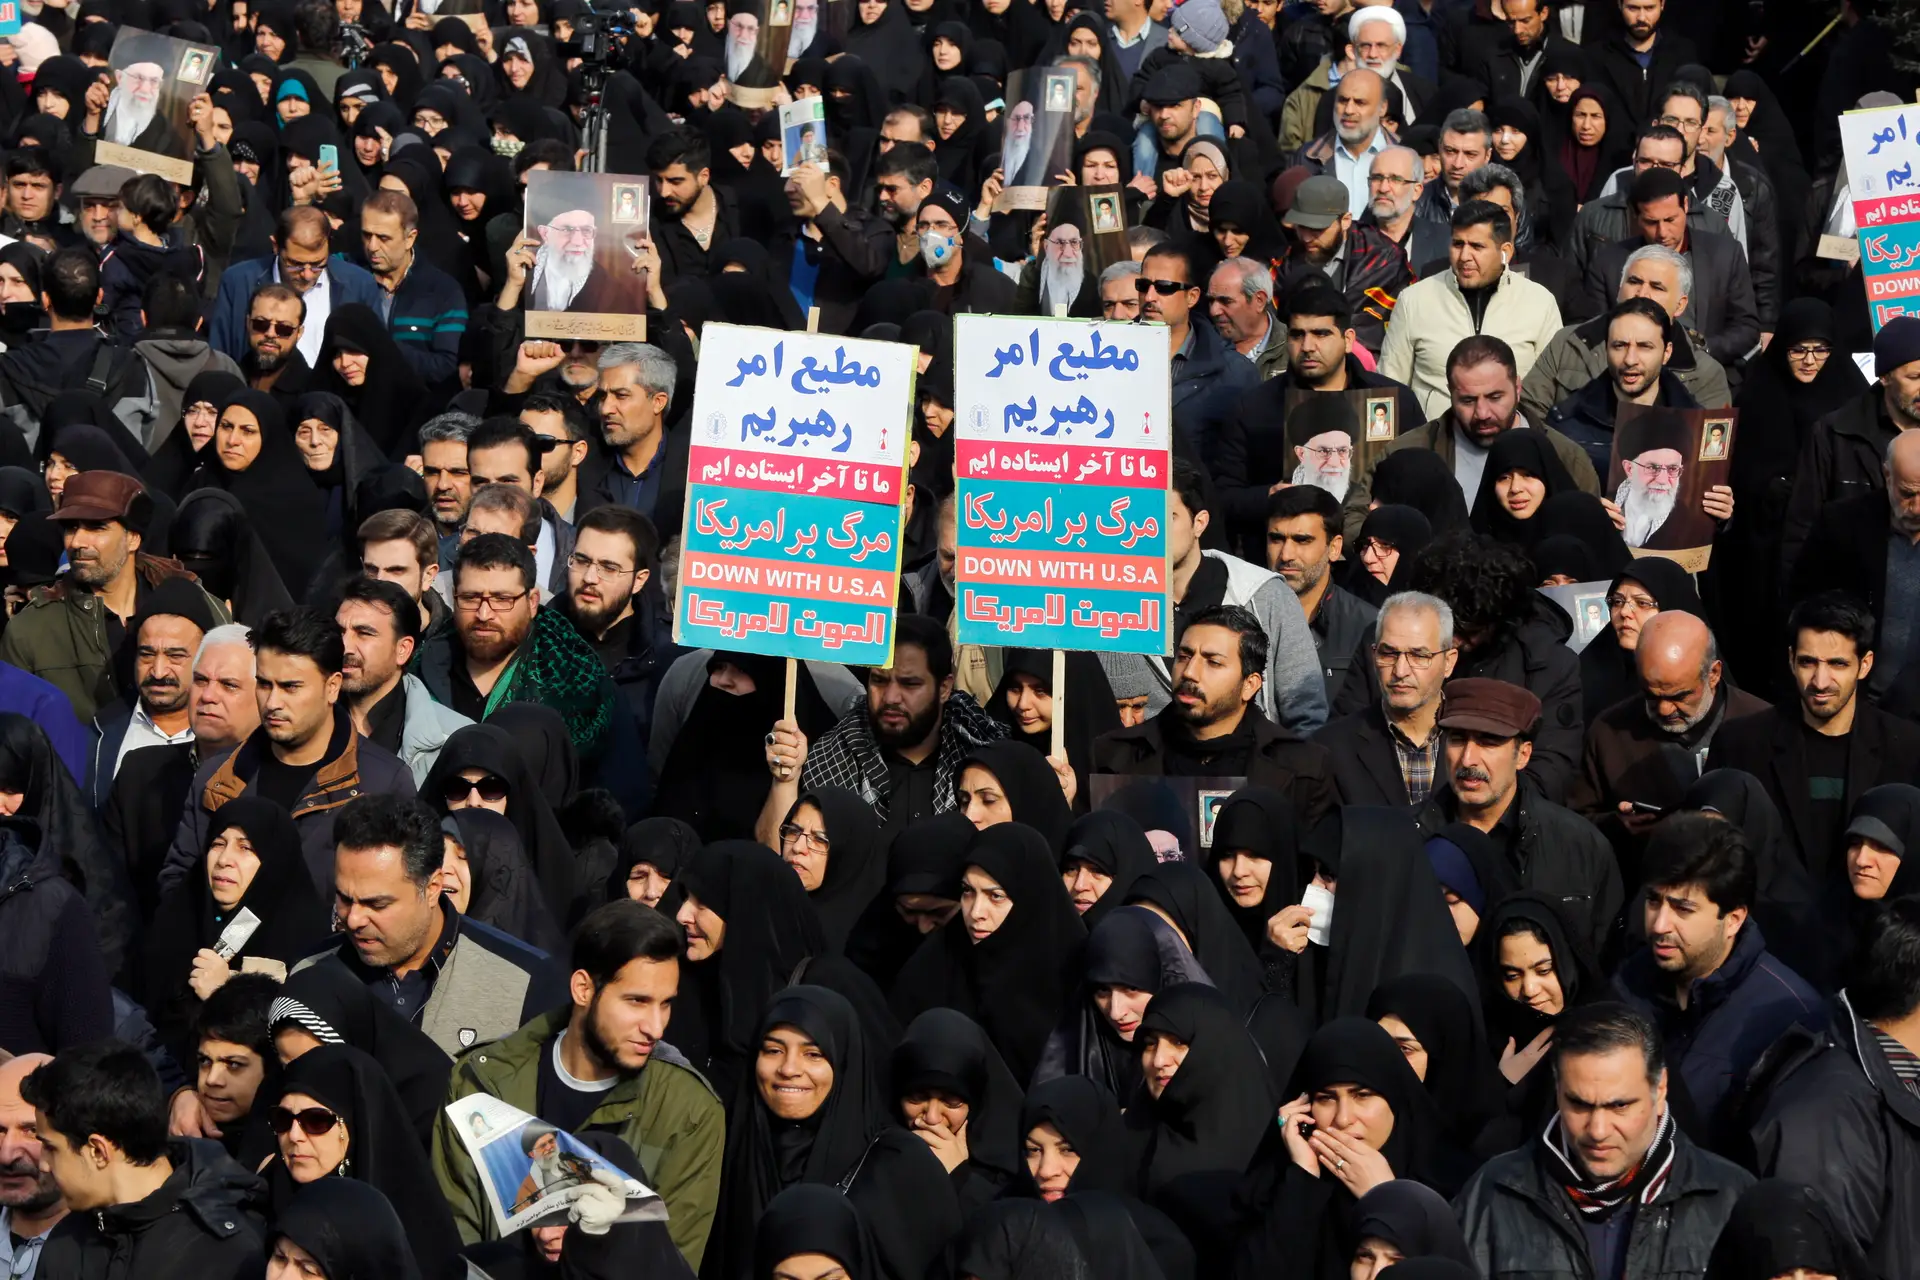 Os EUA são o país visado nos protestos em Teerão